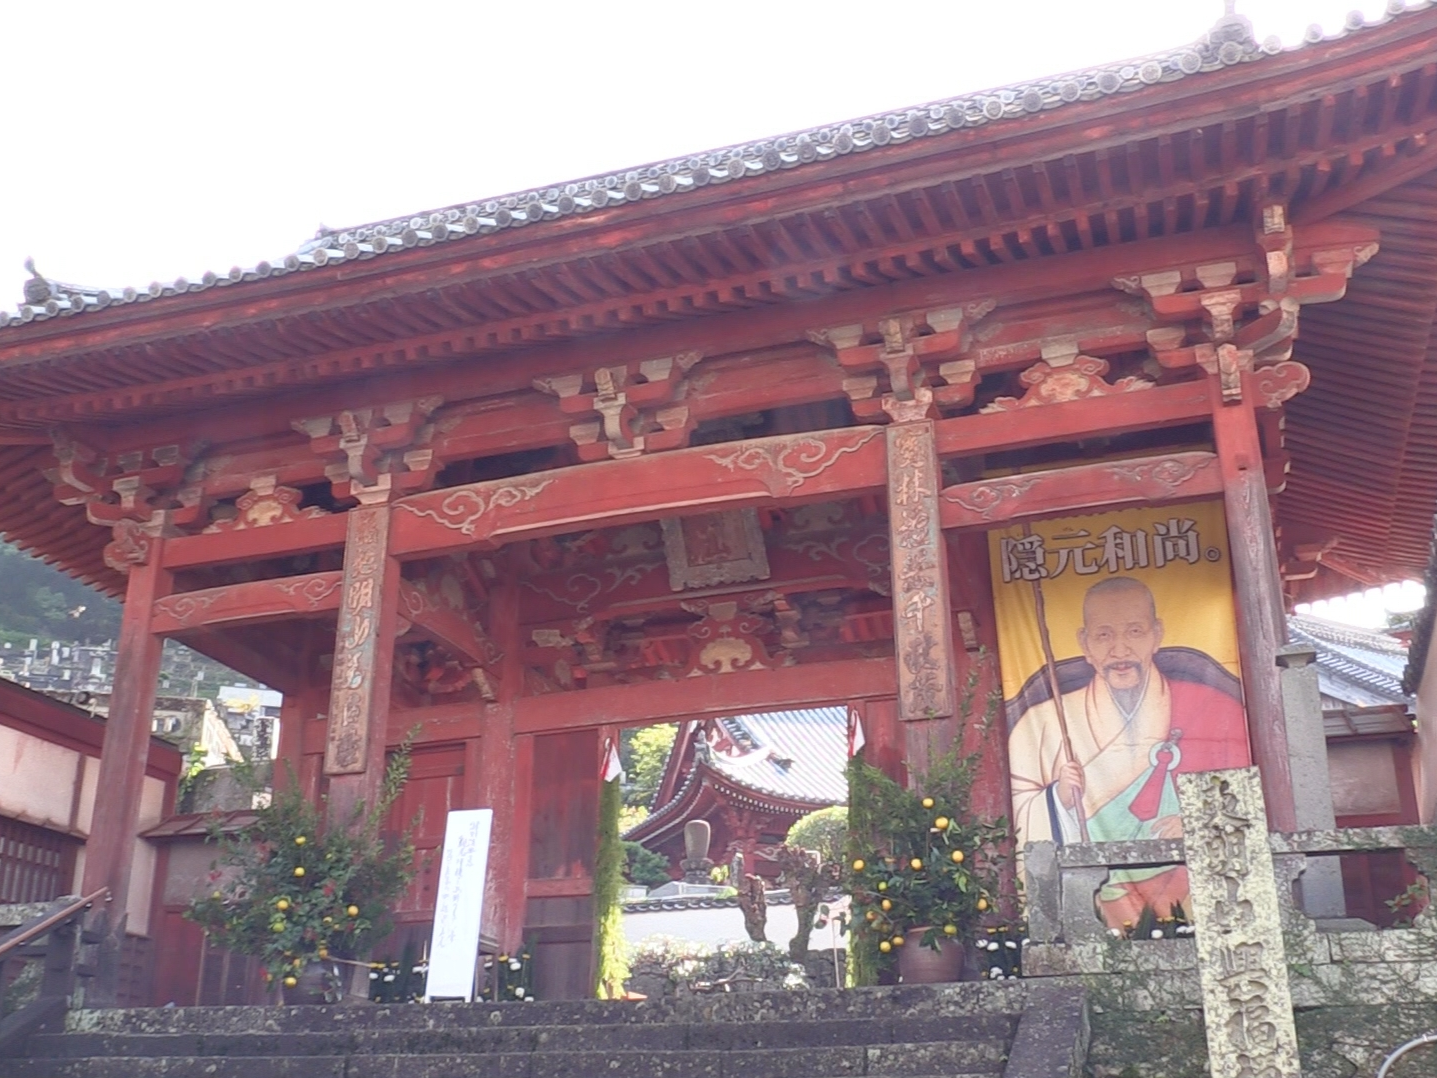 吴为山雕塑作品《隐元禅师像》在日本长崎兴福寺落成揭幕